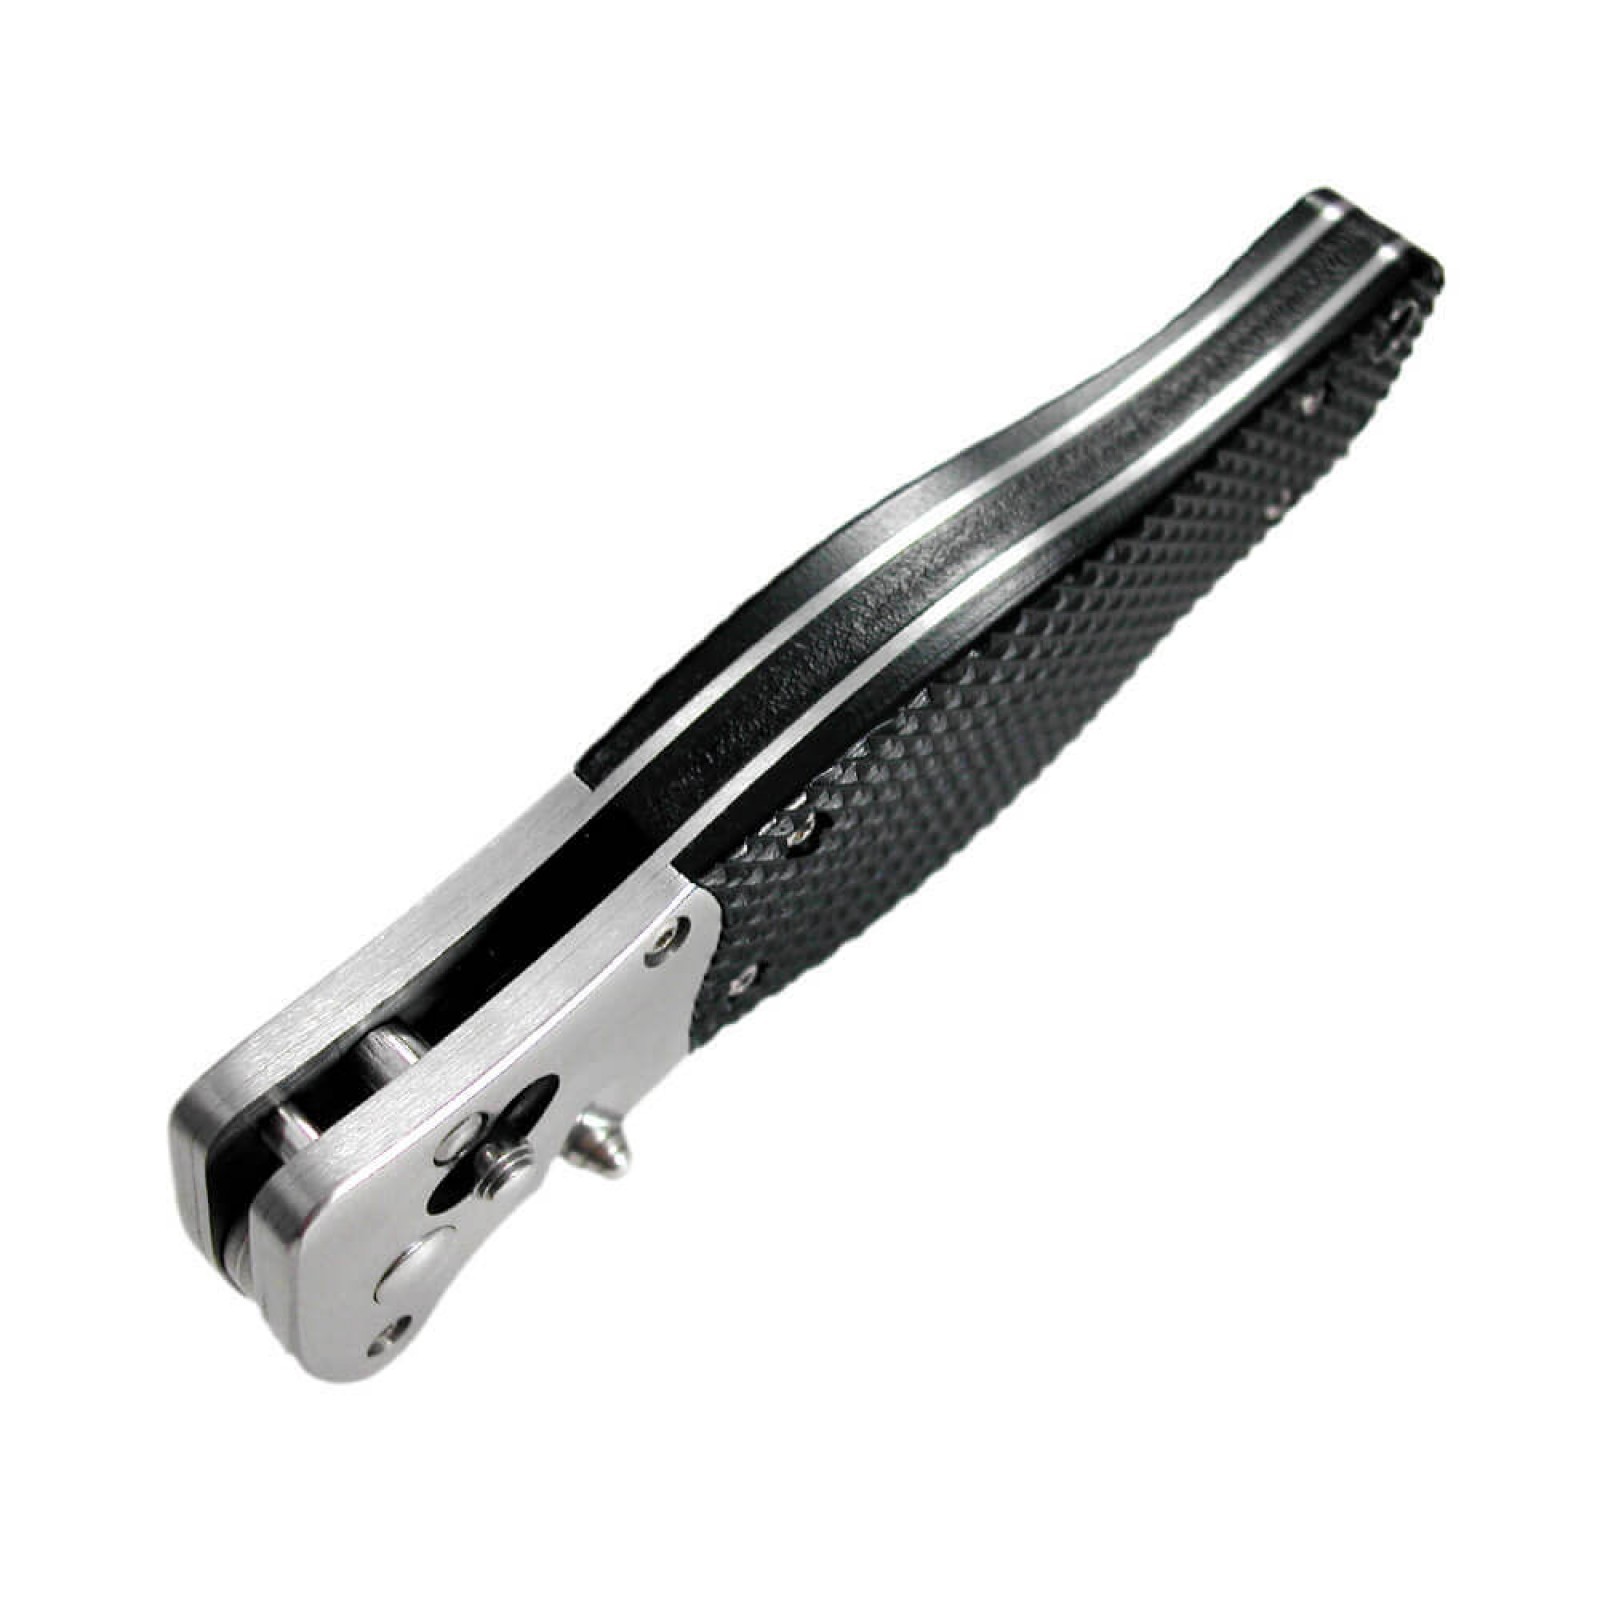 Складной нож Tomcat 3.0 - SOG S95, сталь VG-10, рукоять кратон - фото 8